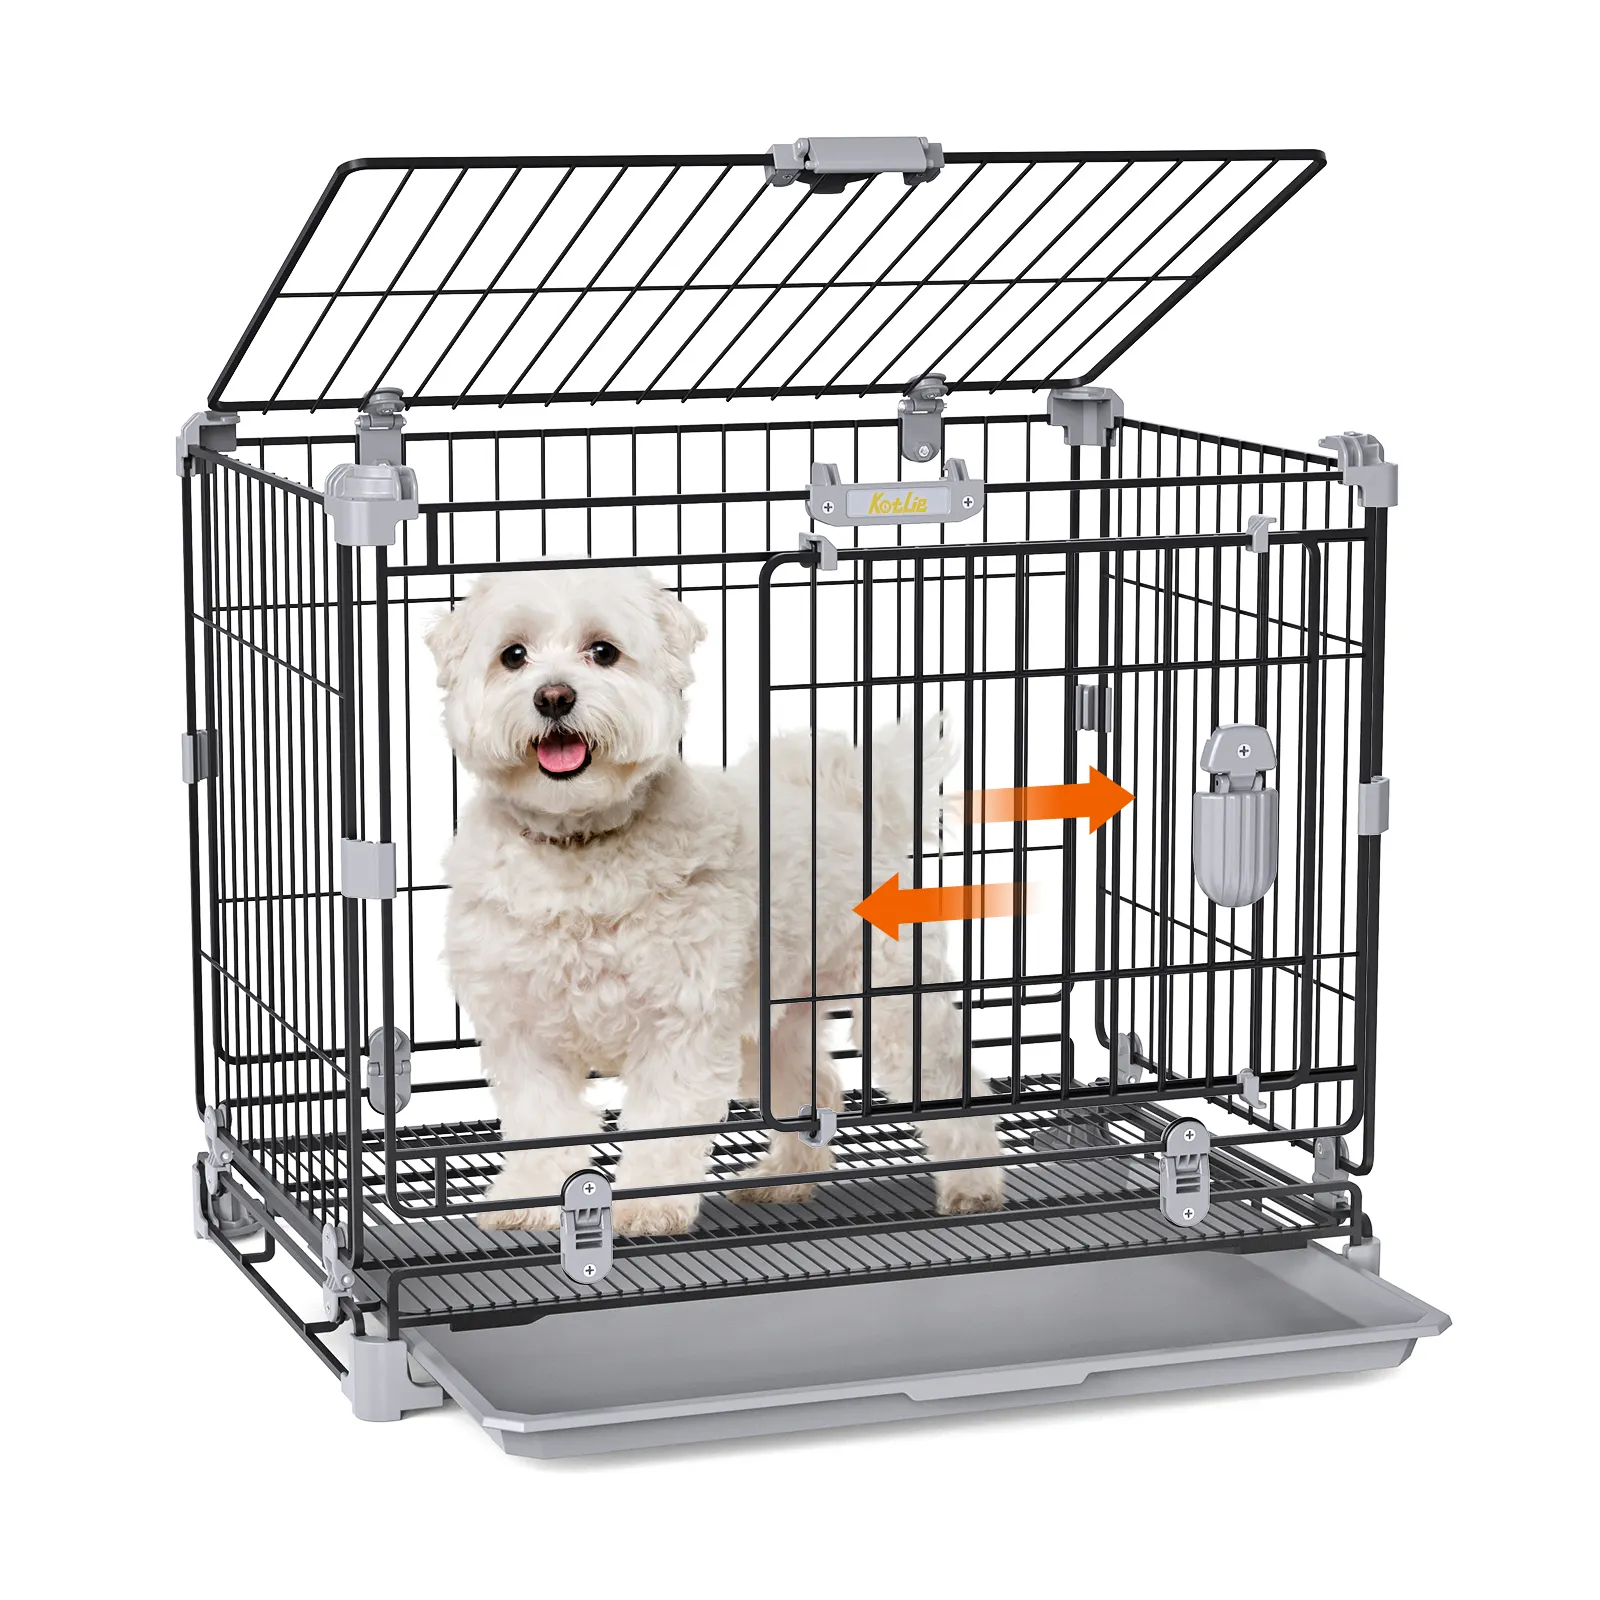 레저 애완 동물 케이지 개 사육장 실내 접을 수있는 고양이 운송 캐리어 케이지 수동 밸브가있는 범용 휠